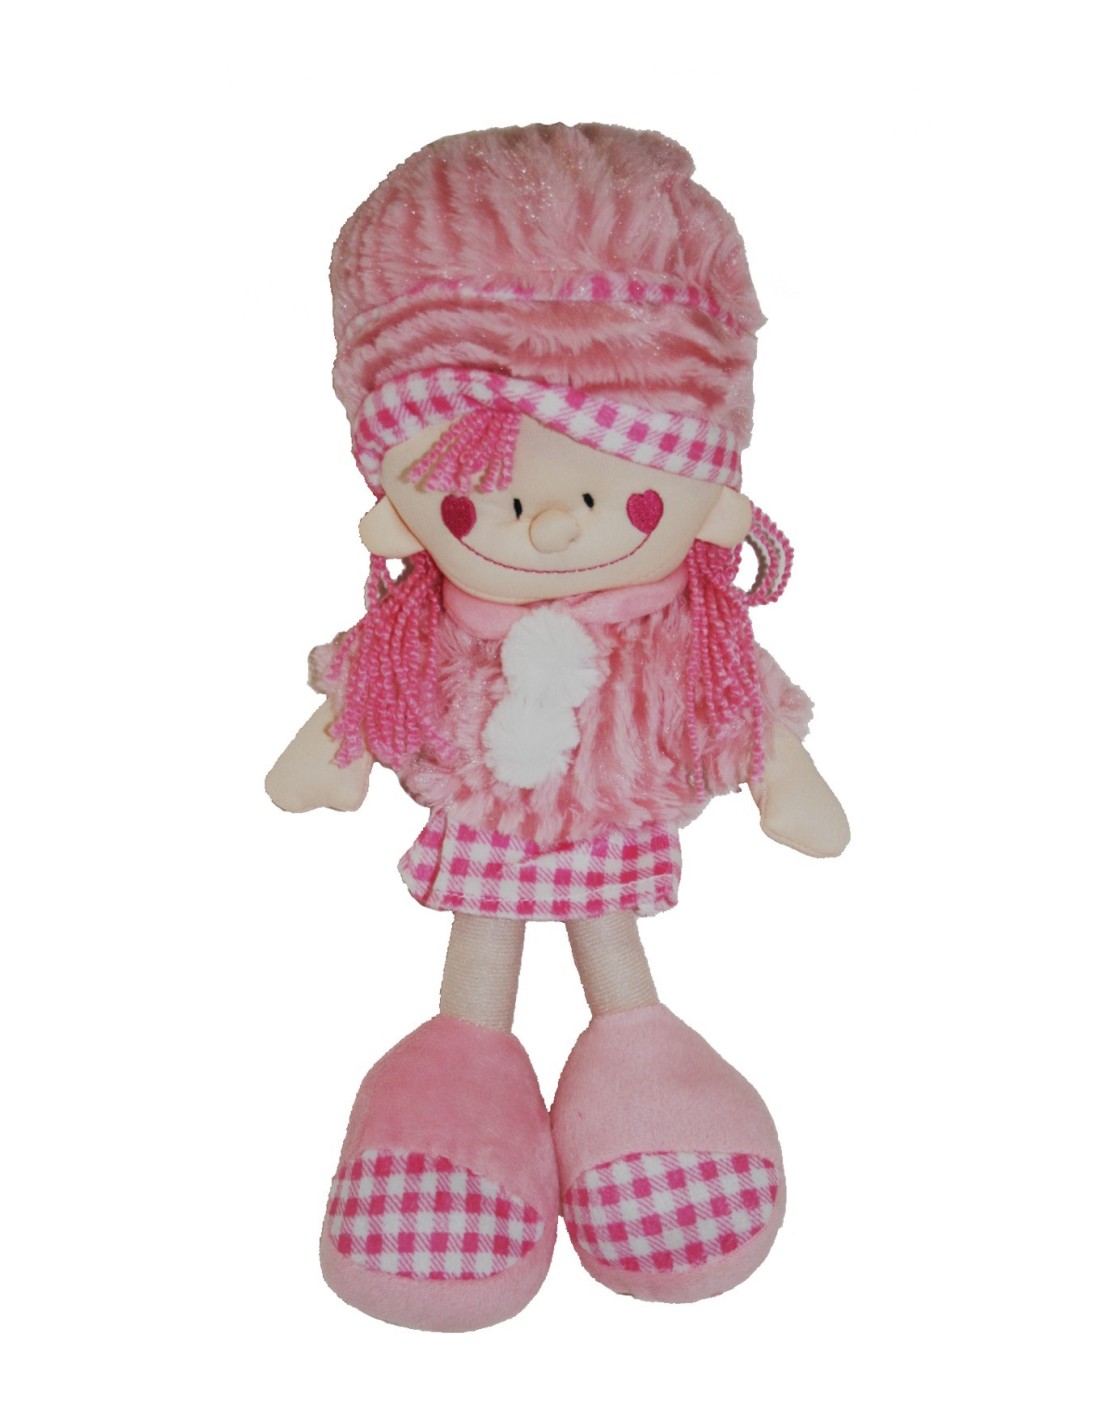 Muñeca clásica de trapo con vestido de color rosa muy suave